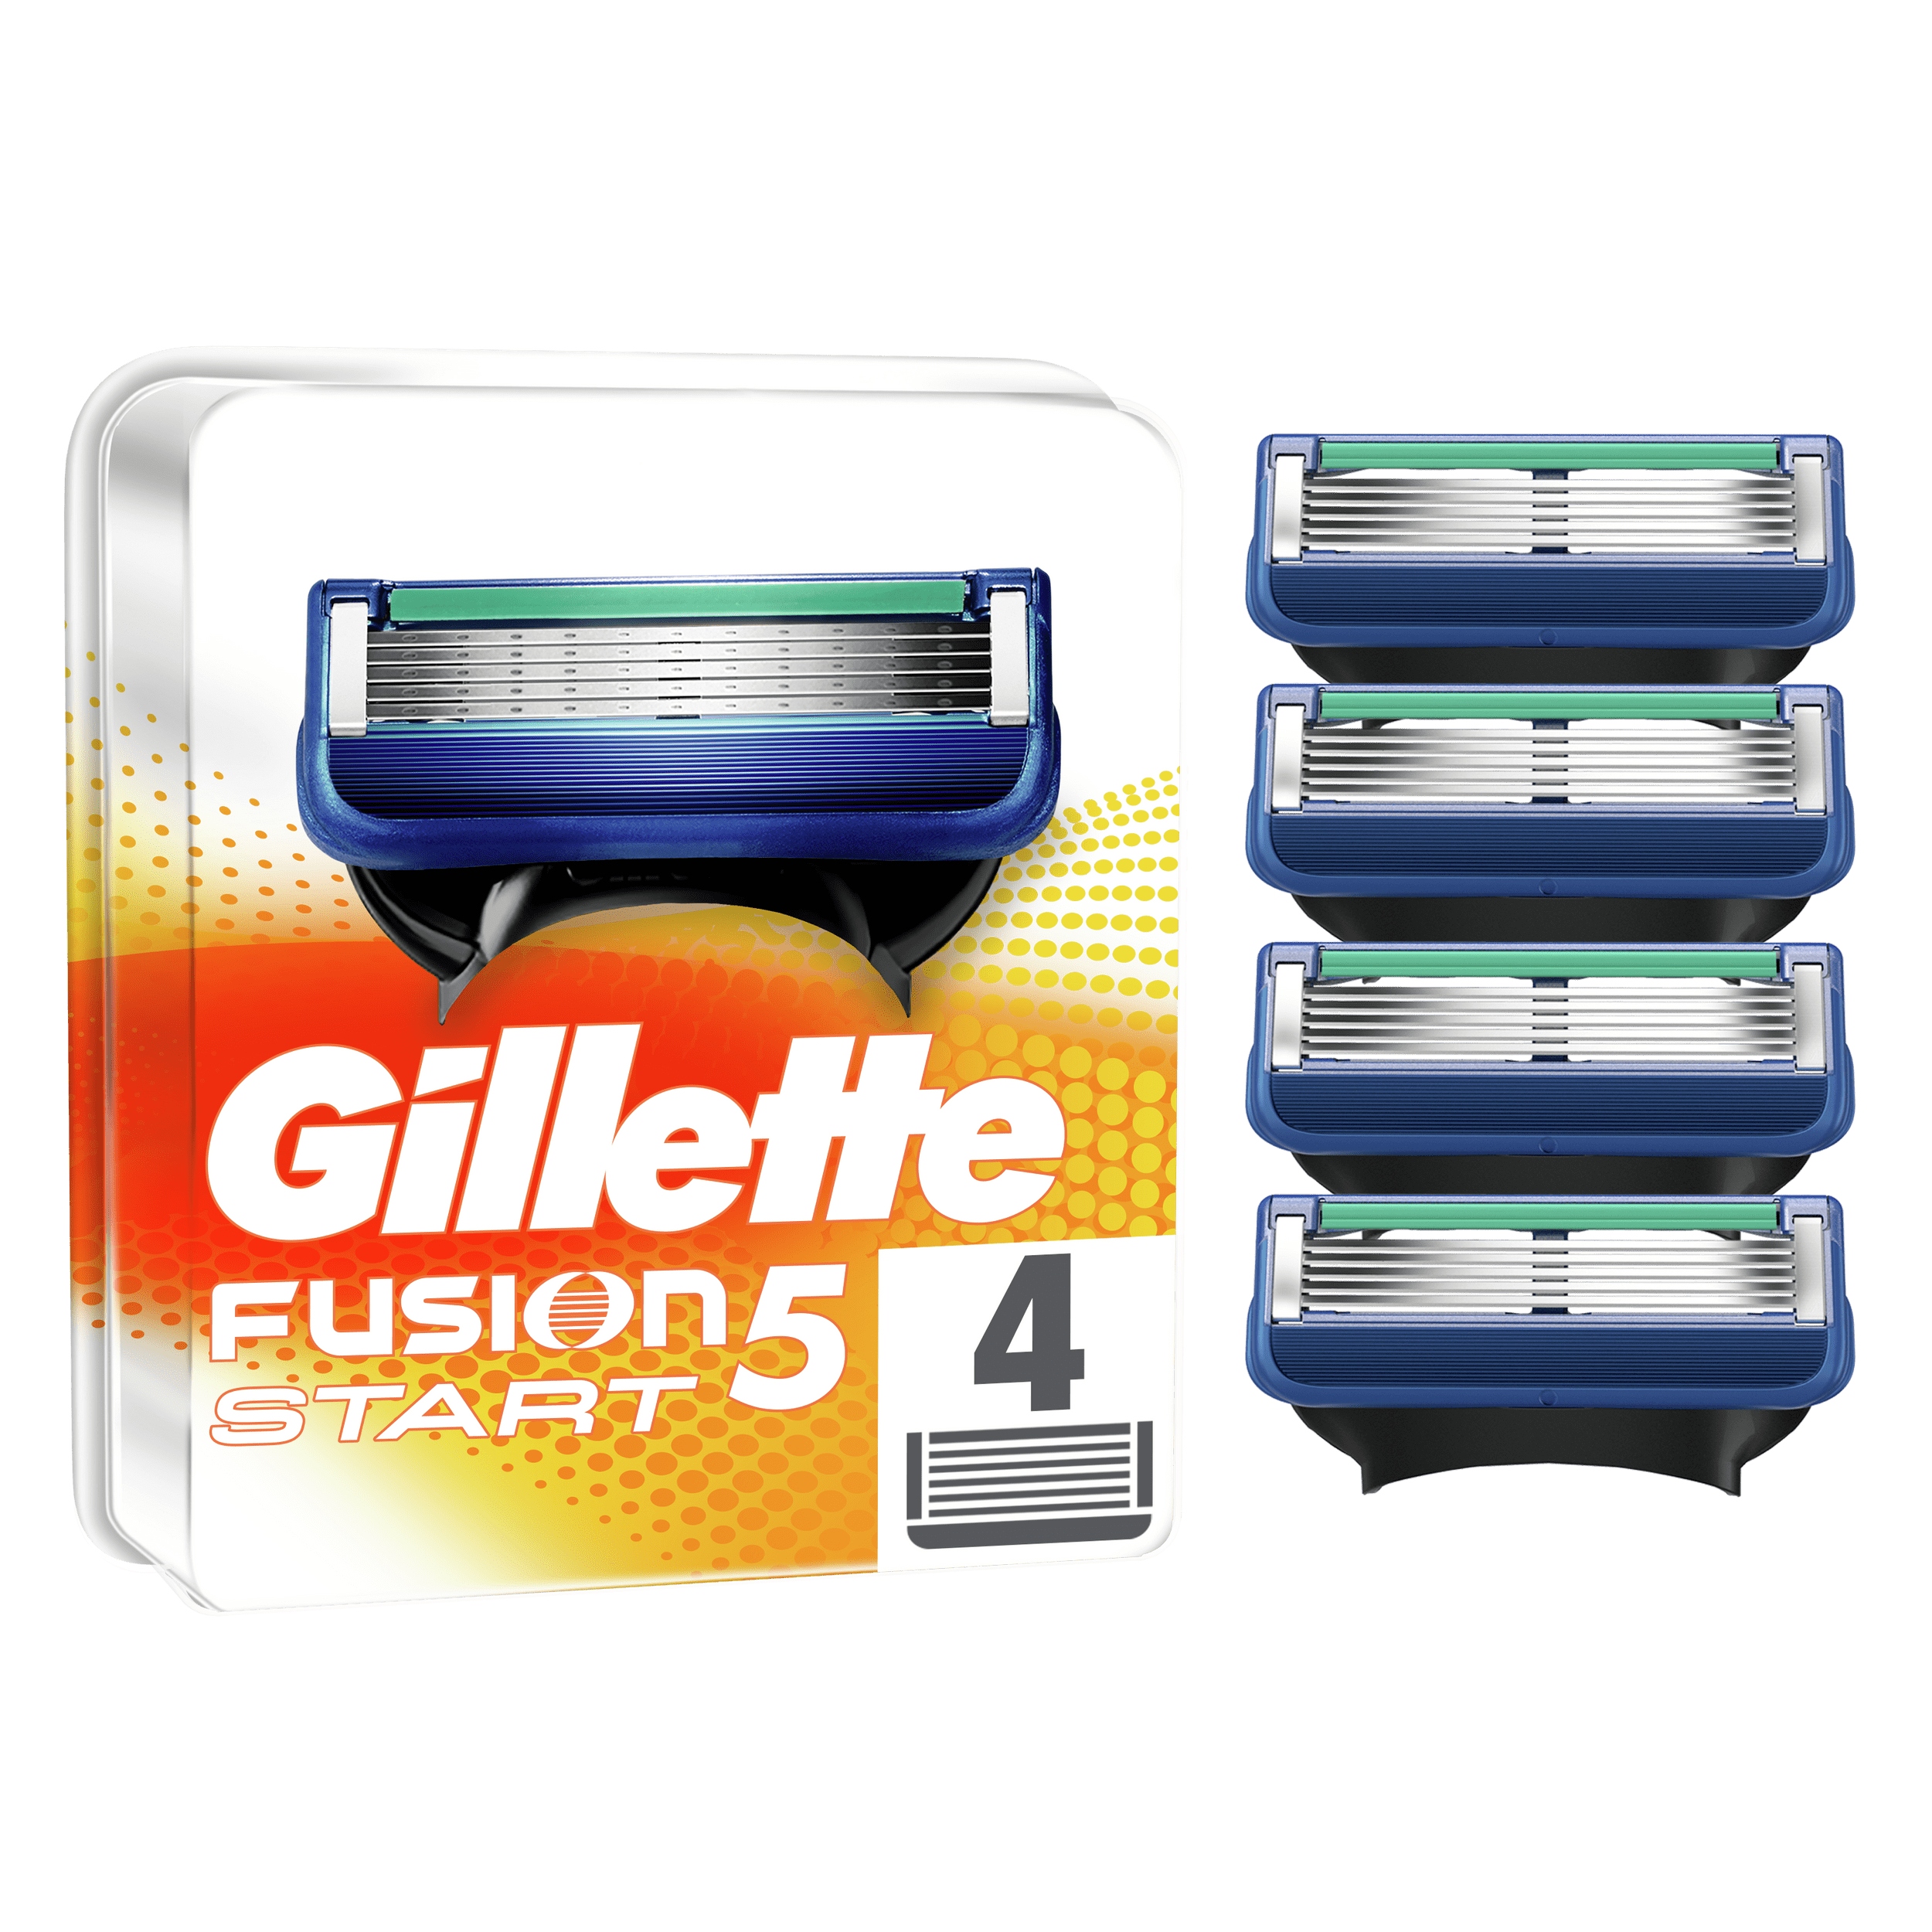 Promocja Gillette Fusion5 Start Ostrza wkłady 4 sztuki wyprzedaż przecena